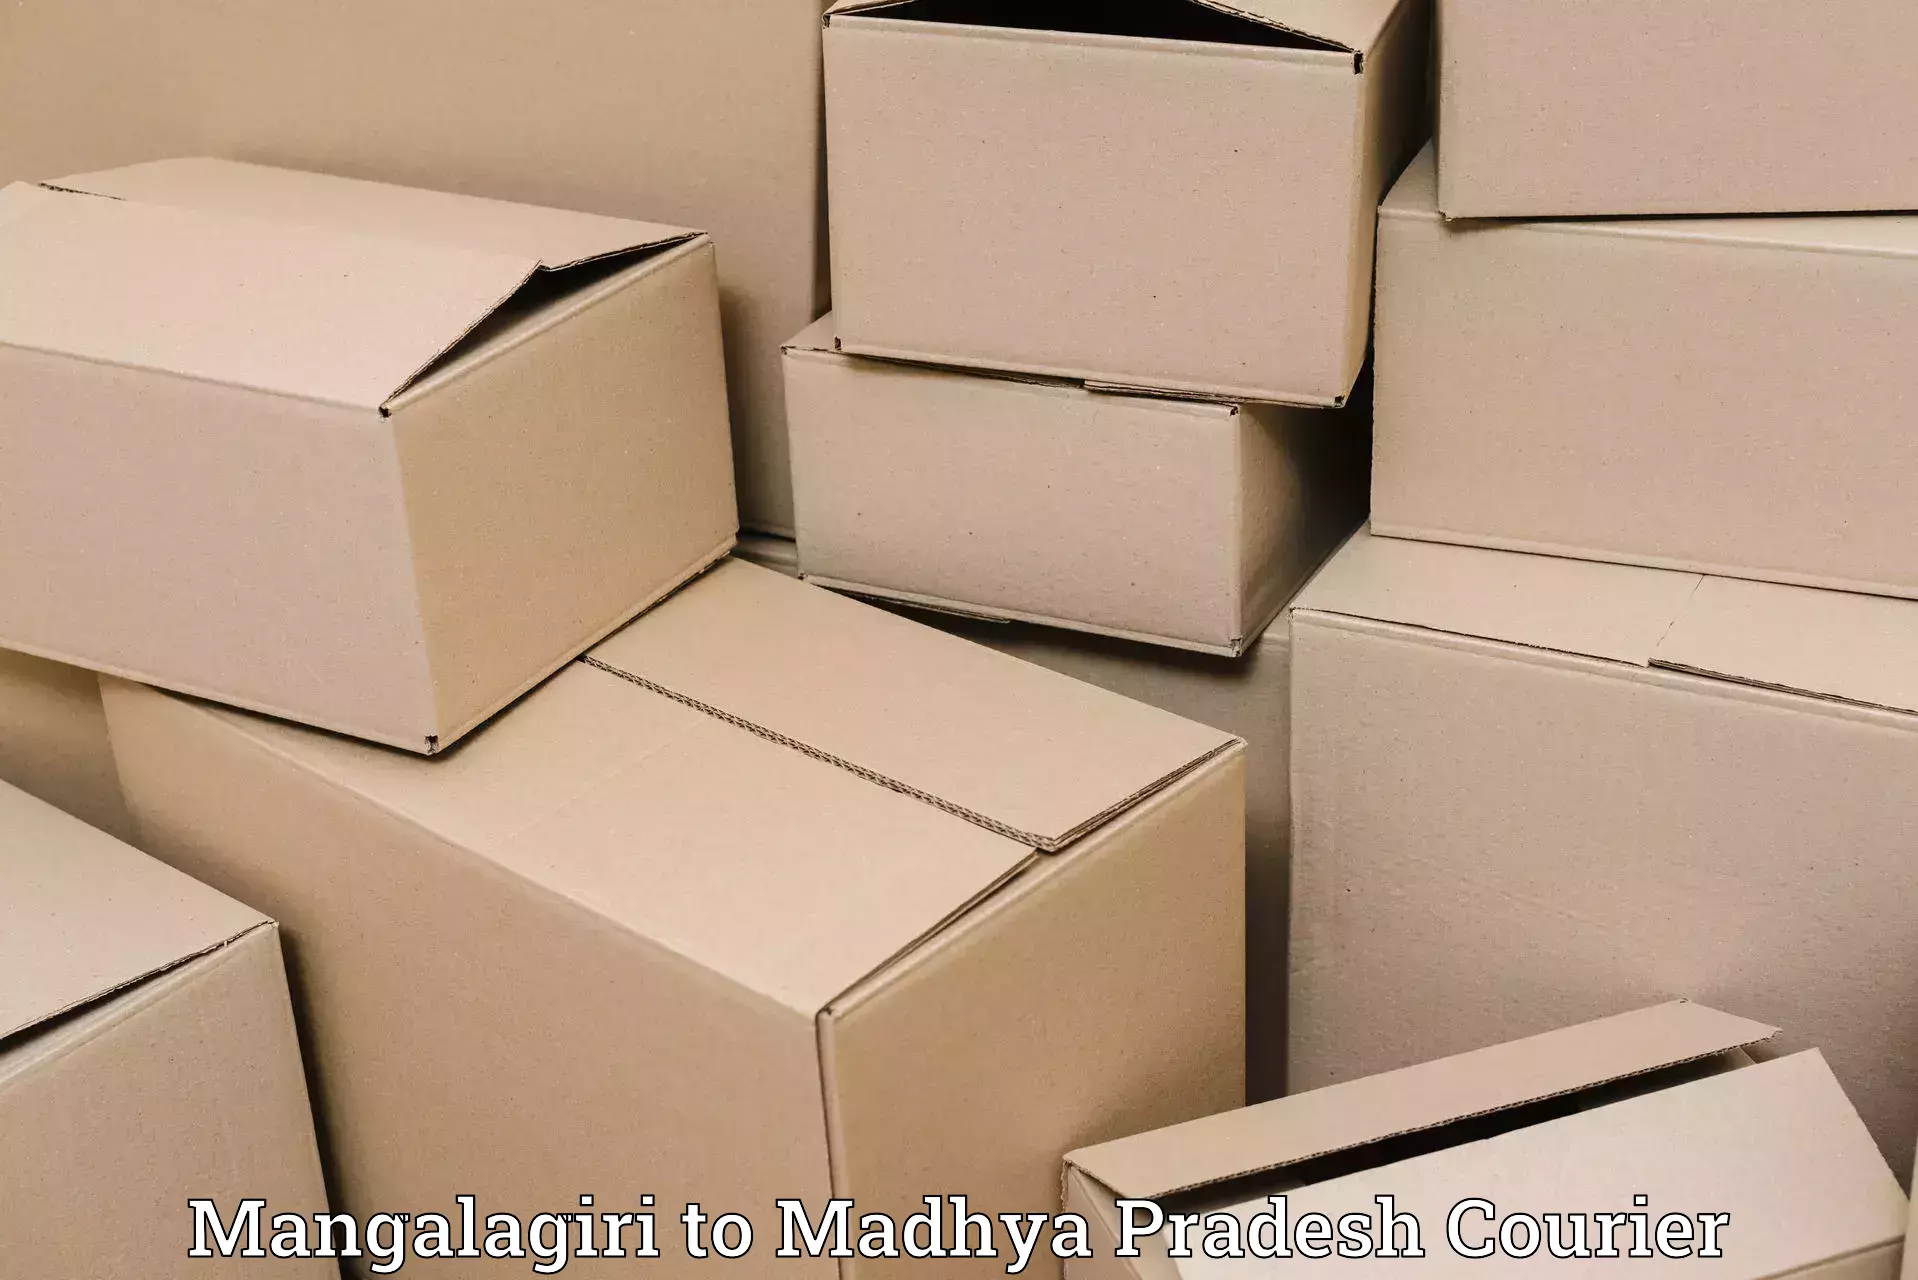 Comprehensive parcel tracking Mangalagiri to Bichhiya